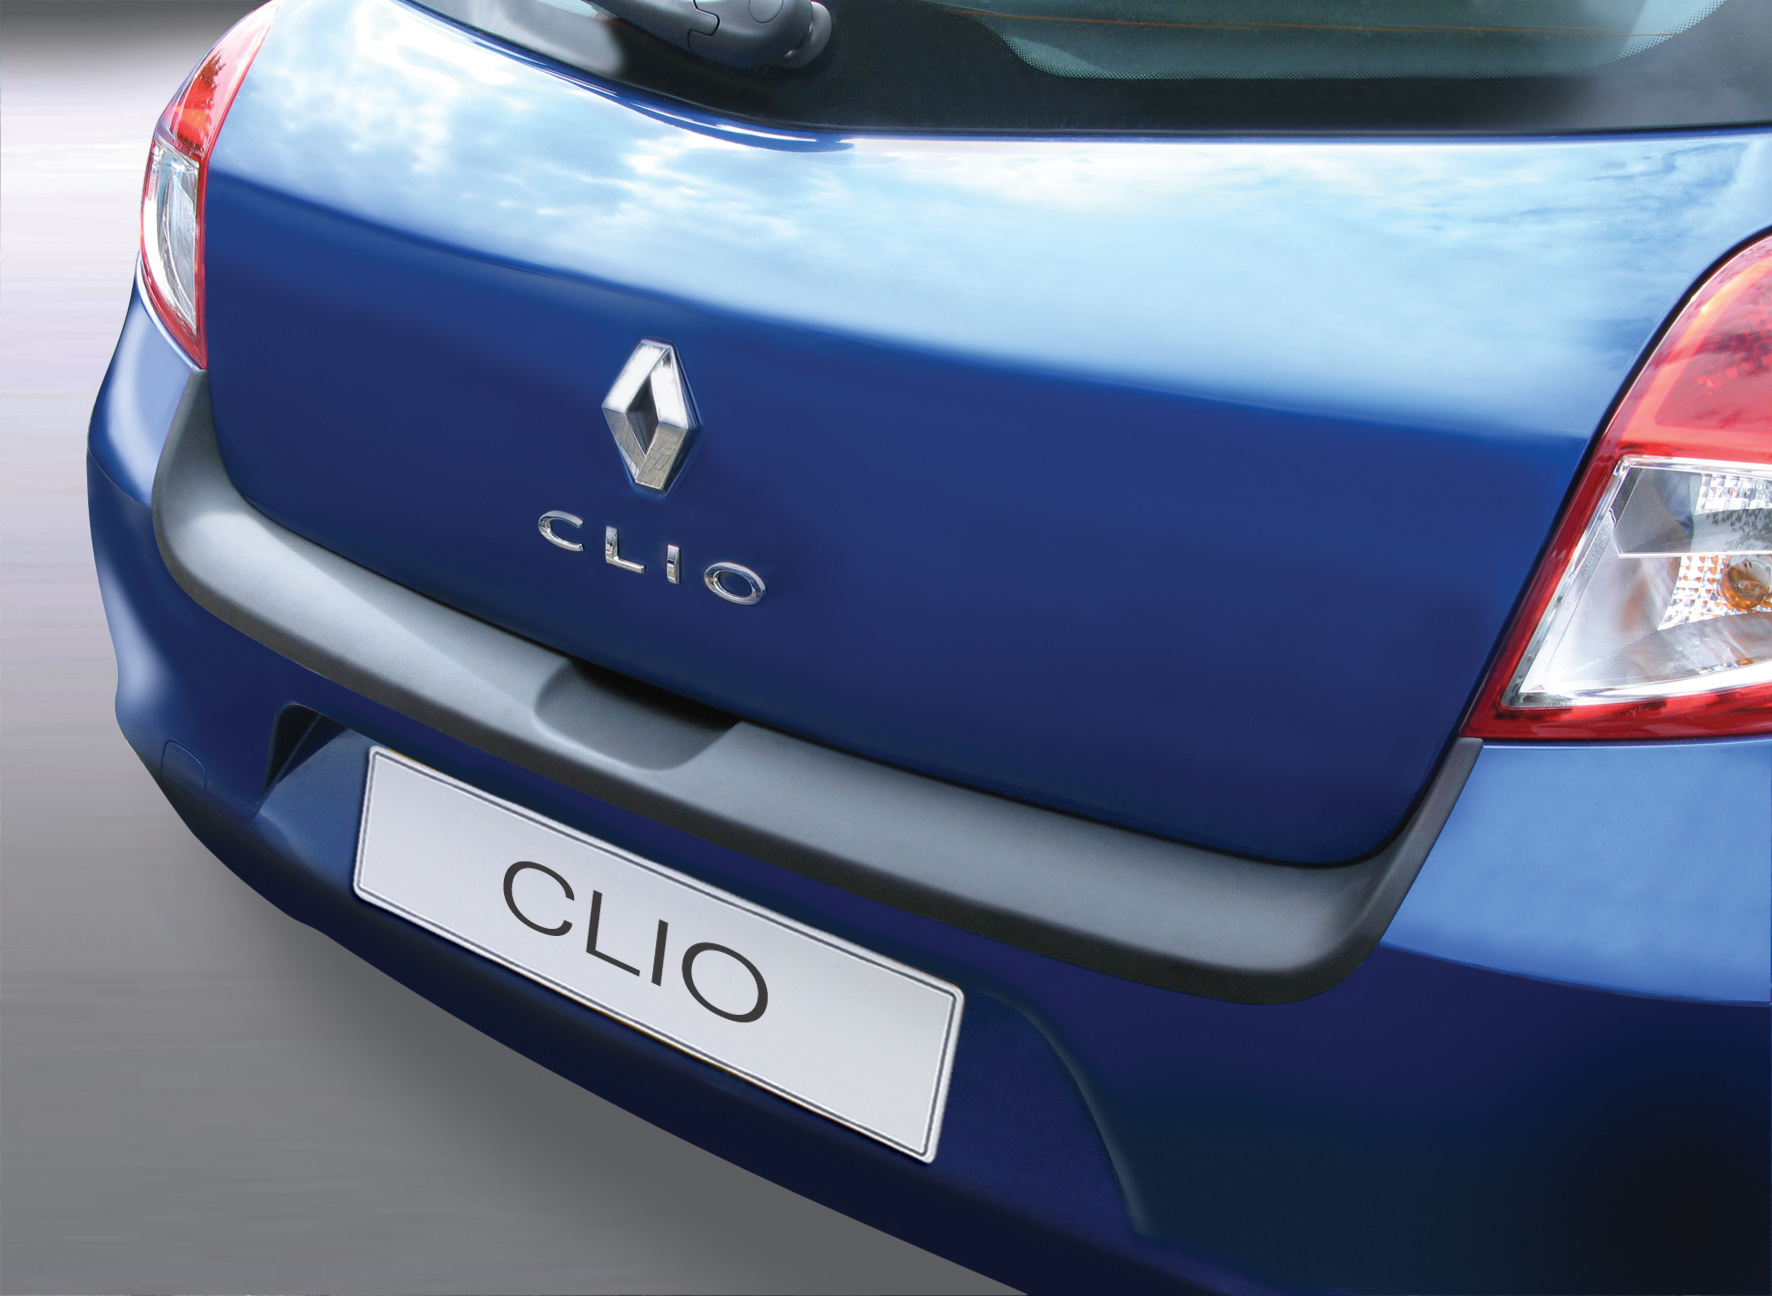 Takapuskurin kolhusuoja Renault Clio 3/5d 5/2009-10/2012